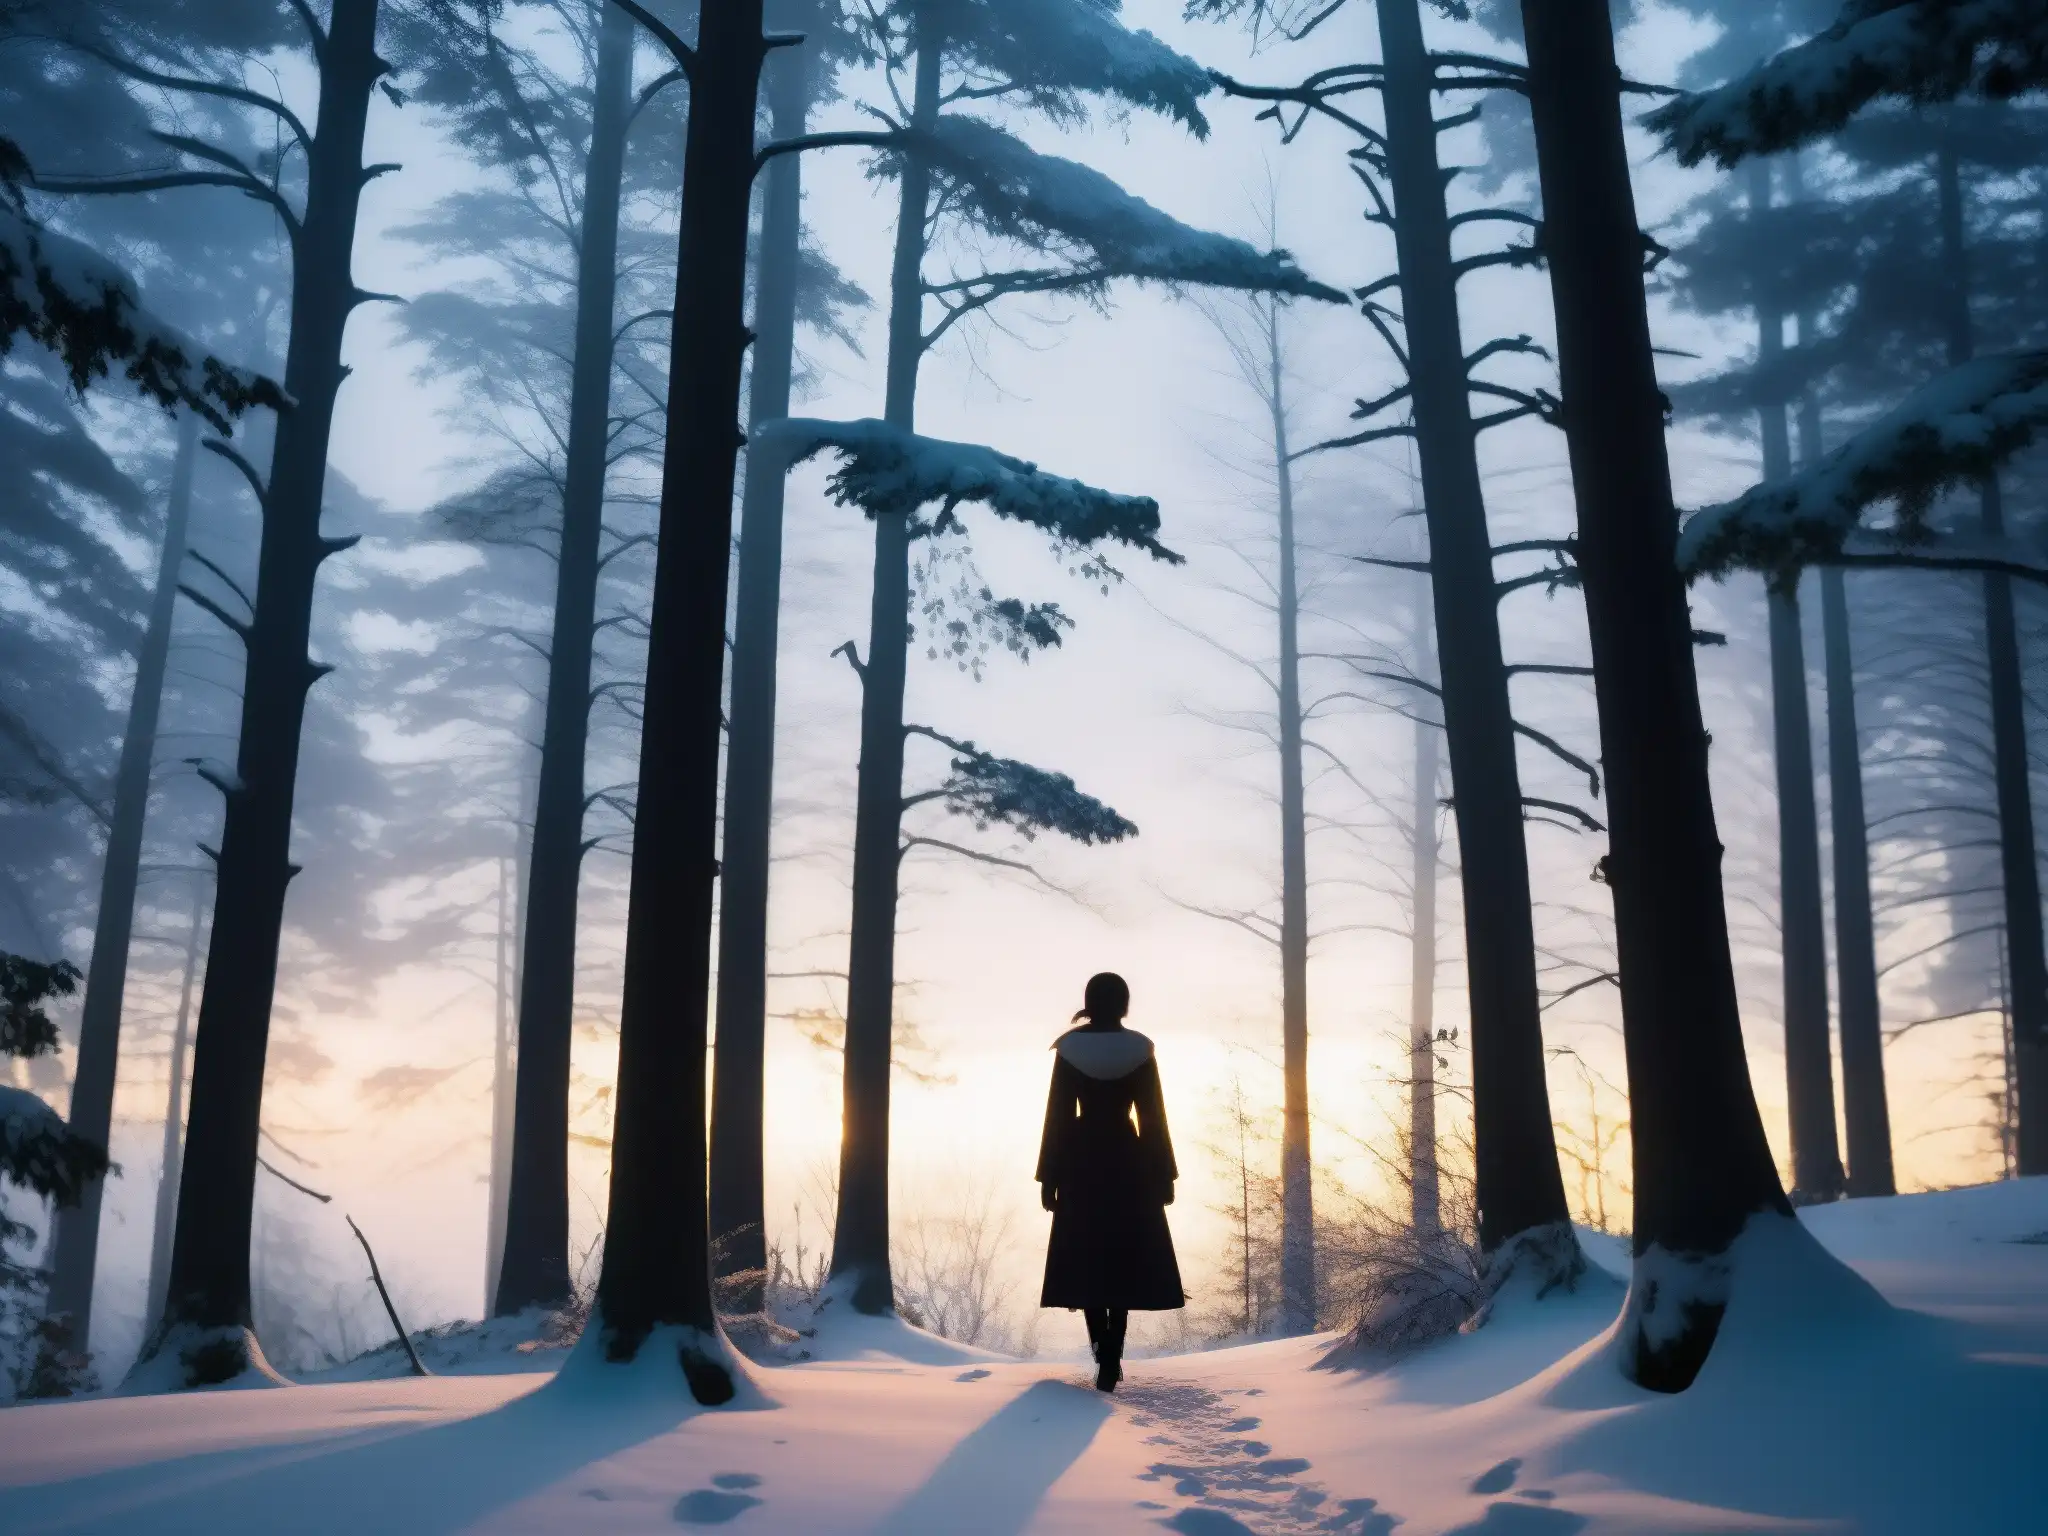 Una misteriosa figura entre árboles nevados al atardecer, evocando encuentros con la Mujer de la Nieve en un paisaje sereno y enigmático